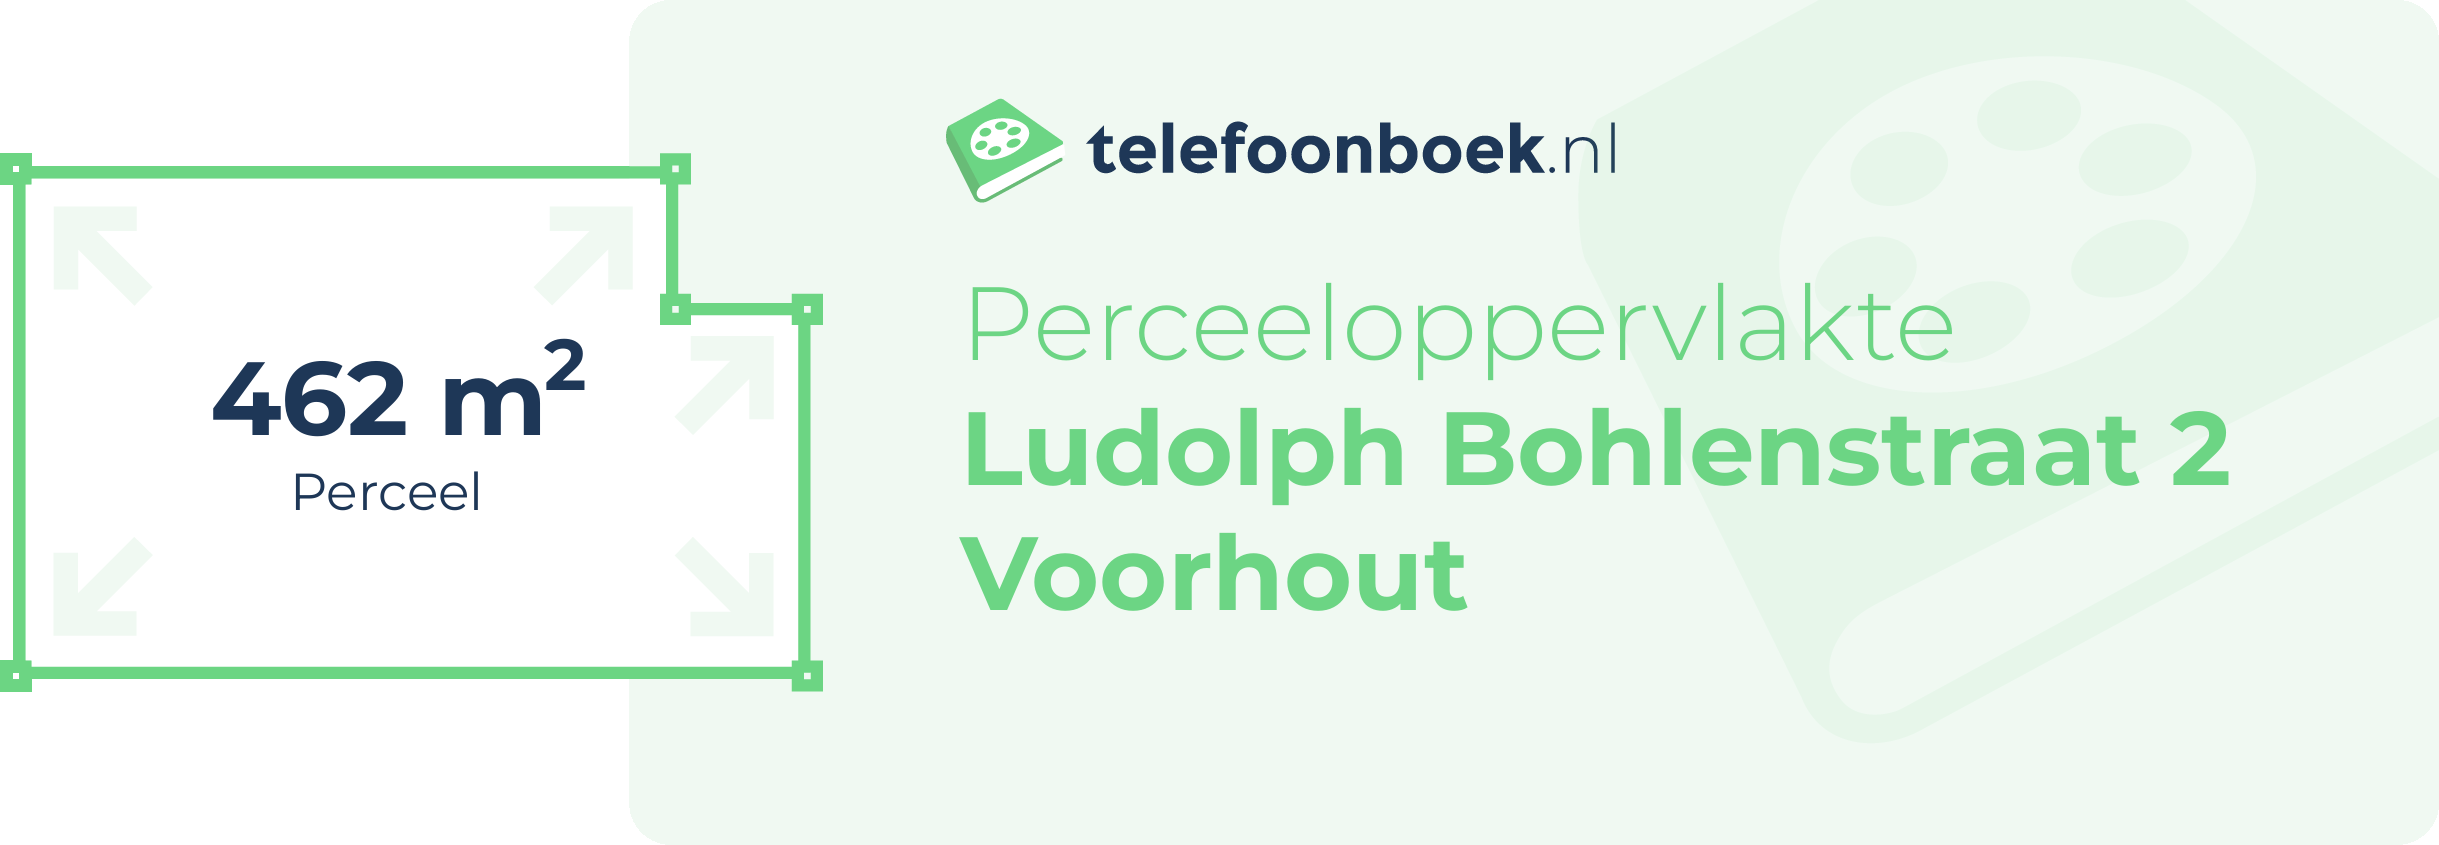 Perceeloppervlakte Ludolph Bohlenstraat 2 Voorhout